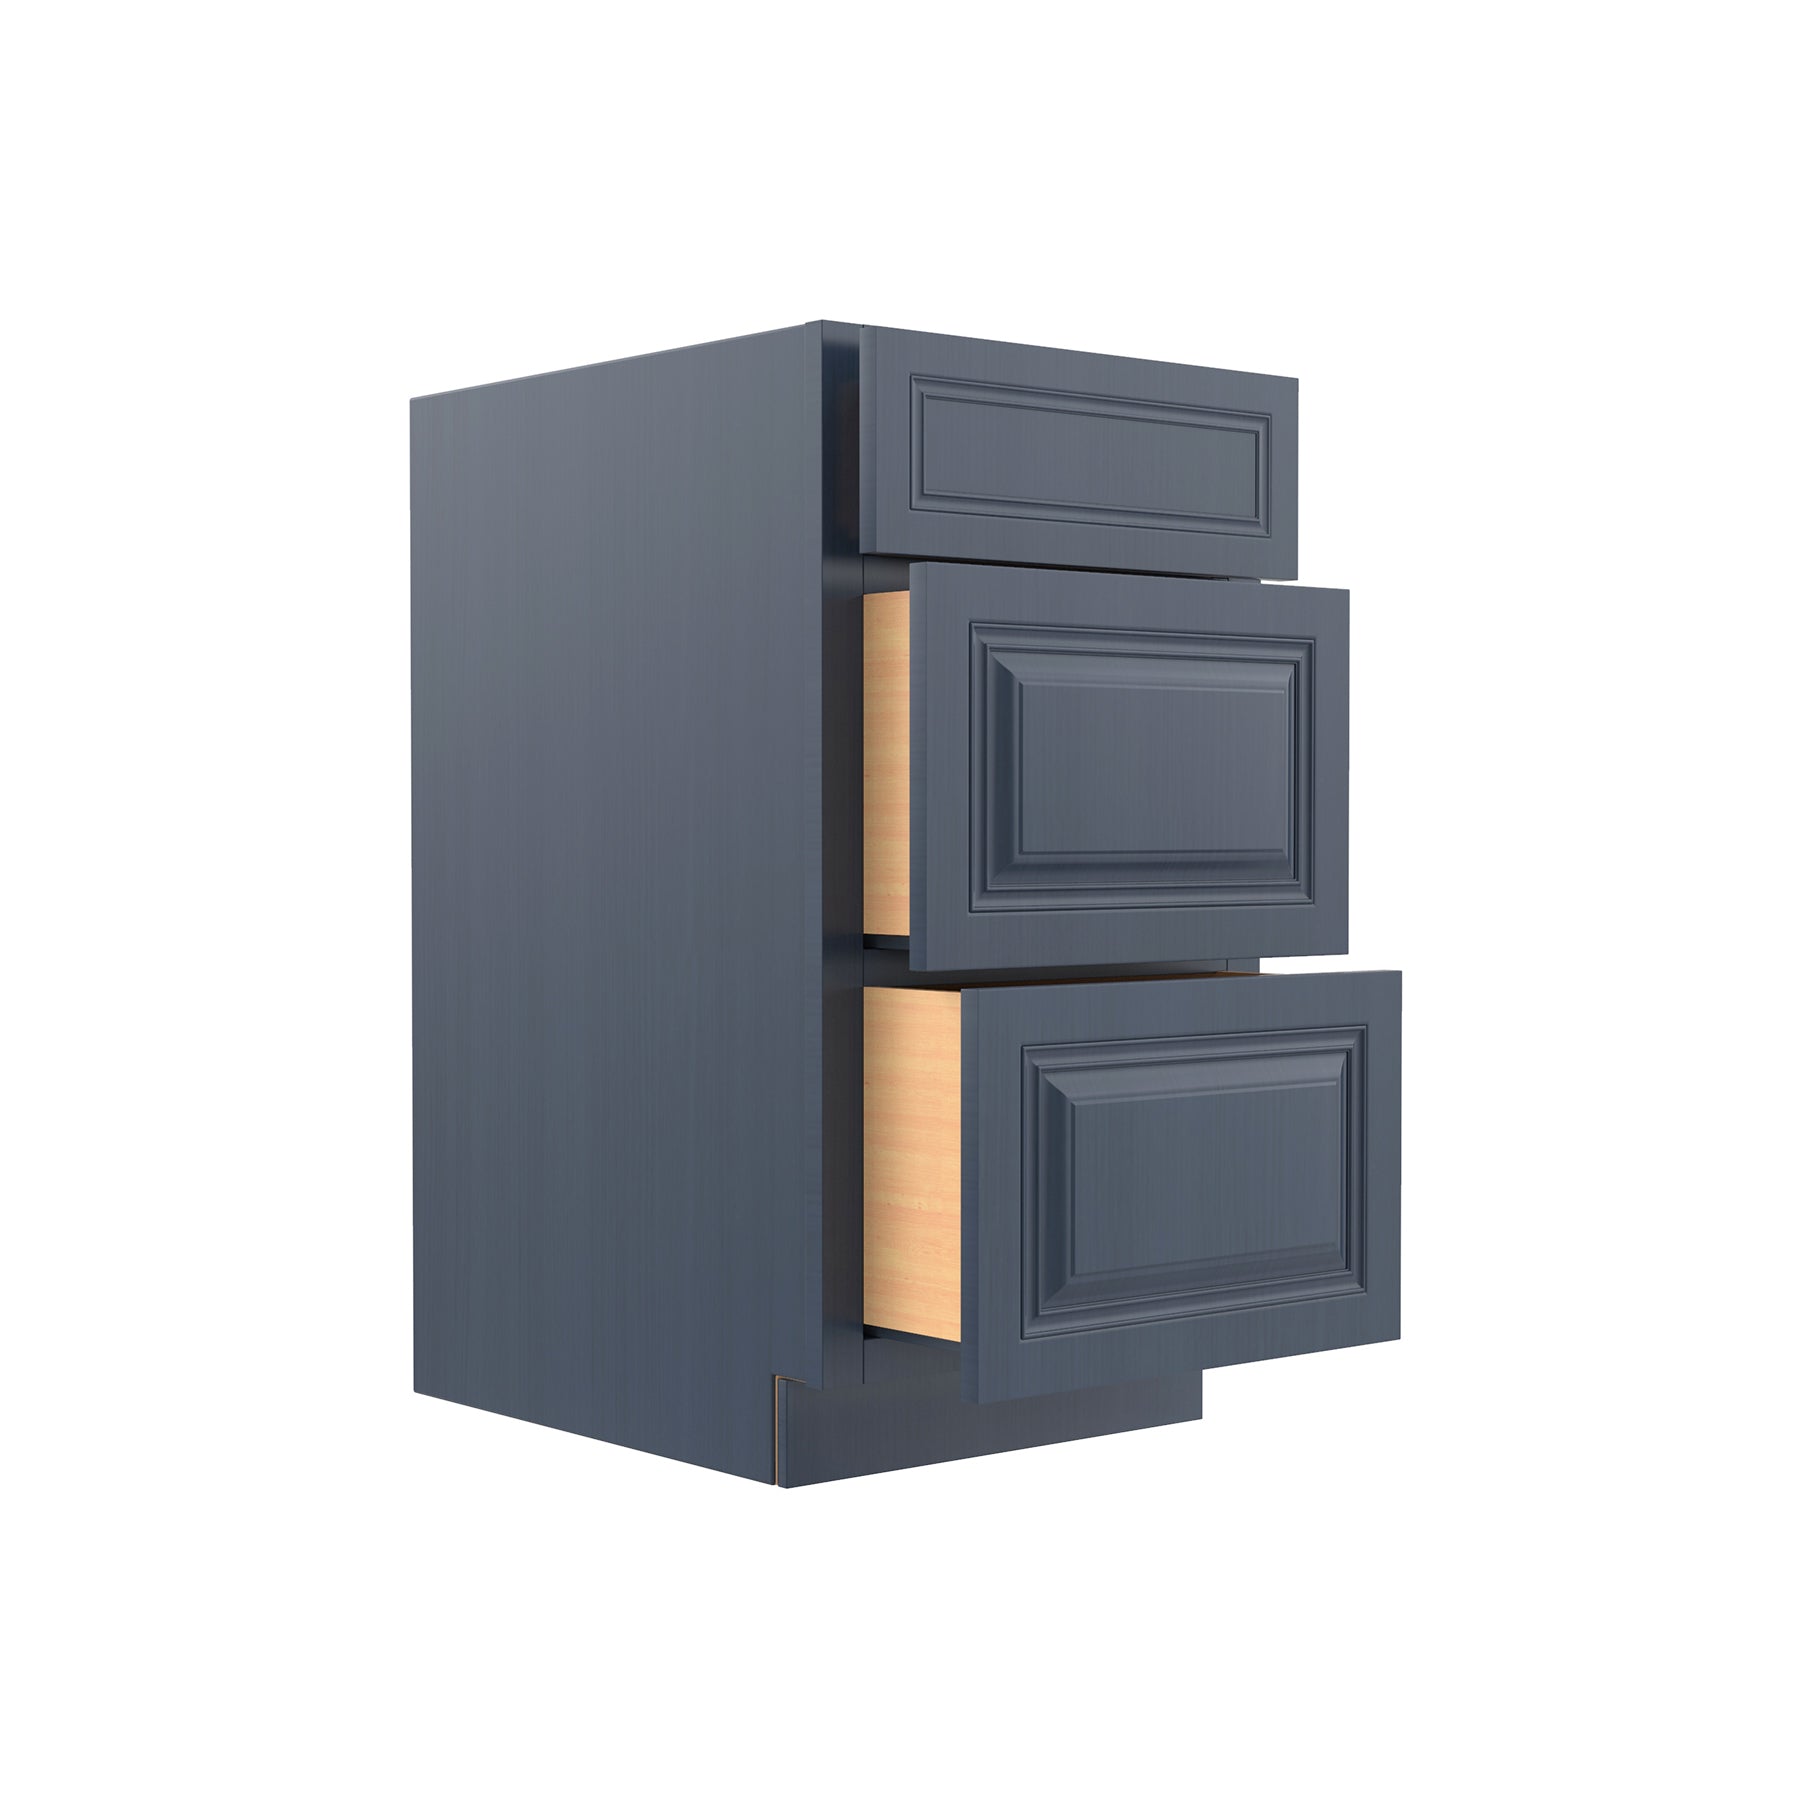 Park Avenue Ocean Blue - 3 Drawer Base Cabinet | 18"W x 34.5"H x 24"D